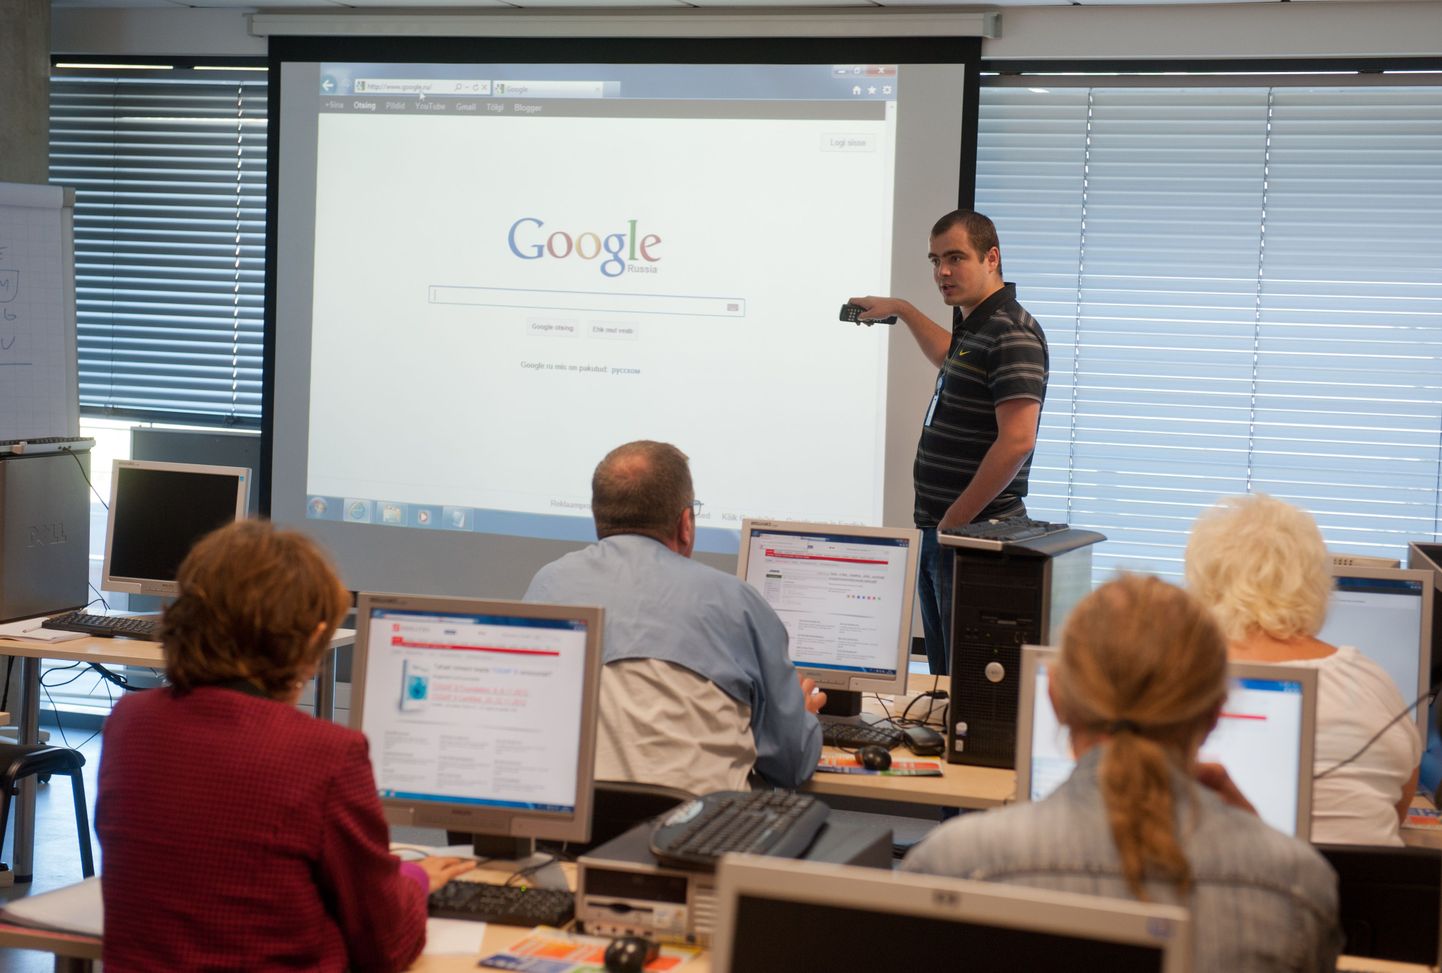 Töötukassa arvuti algõppe koolitus, pildil koolitaja Jaan Vaabel selgitamas, kuidas kasutada Google'i otsingut.